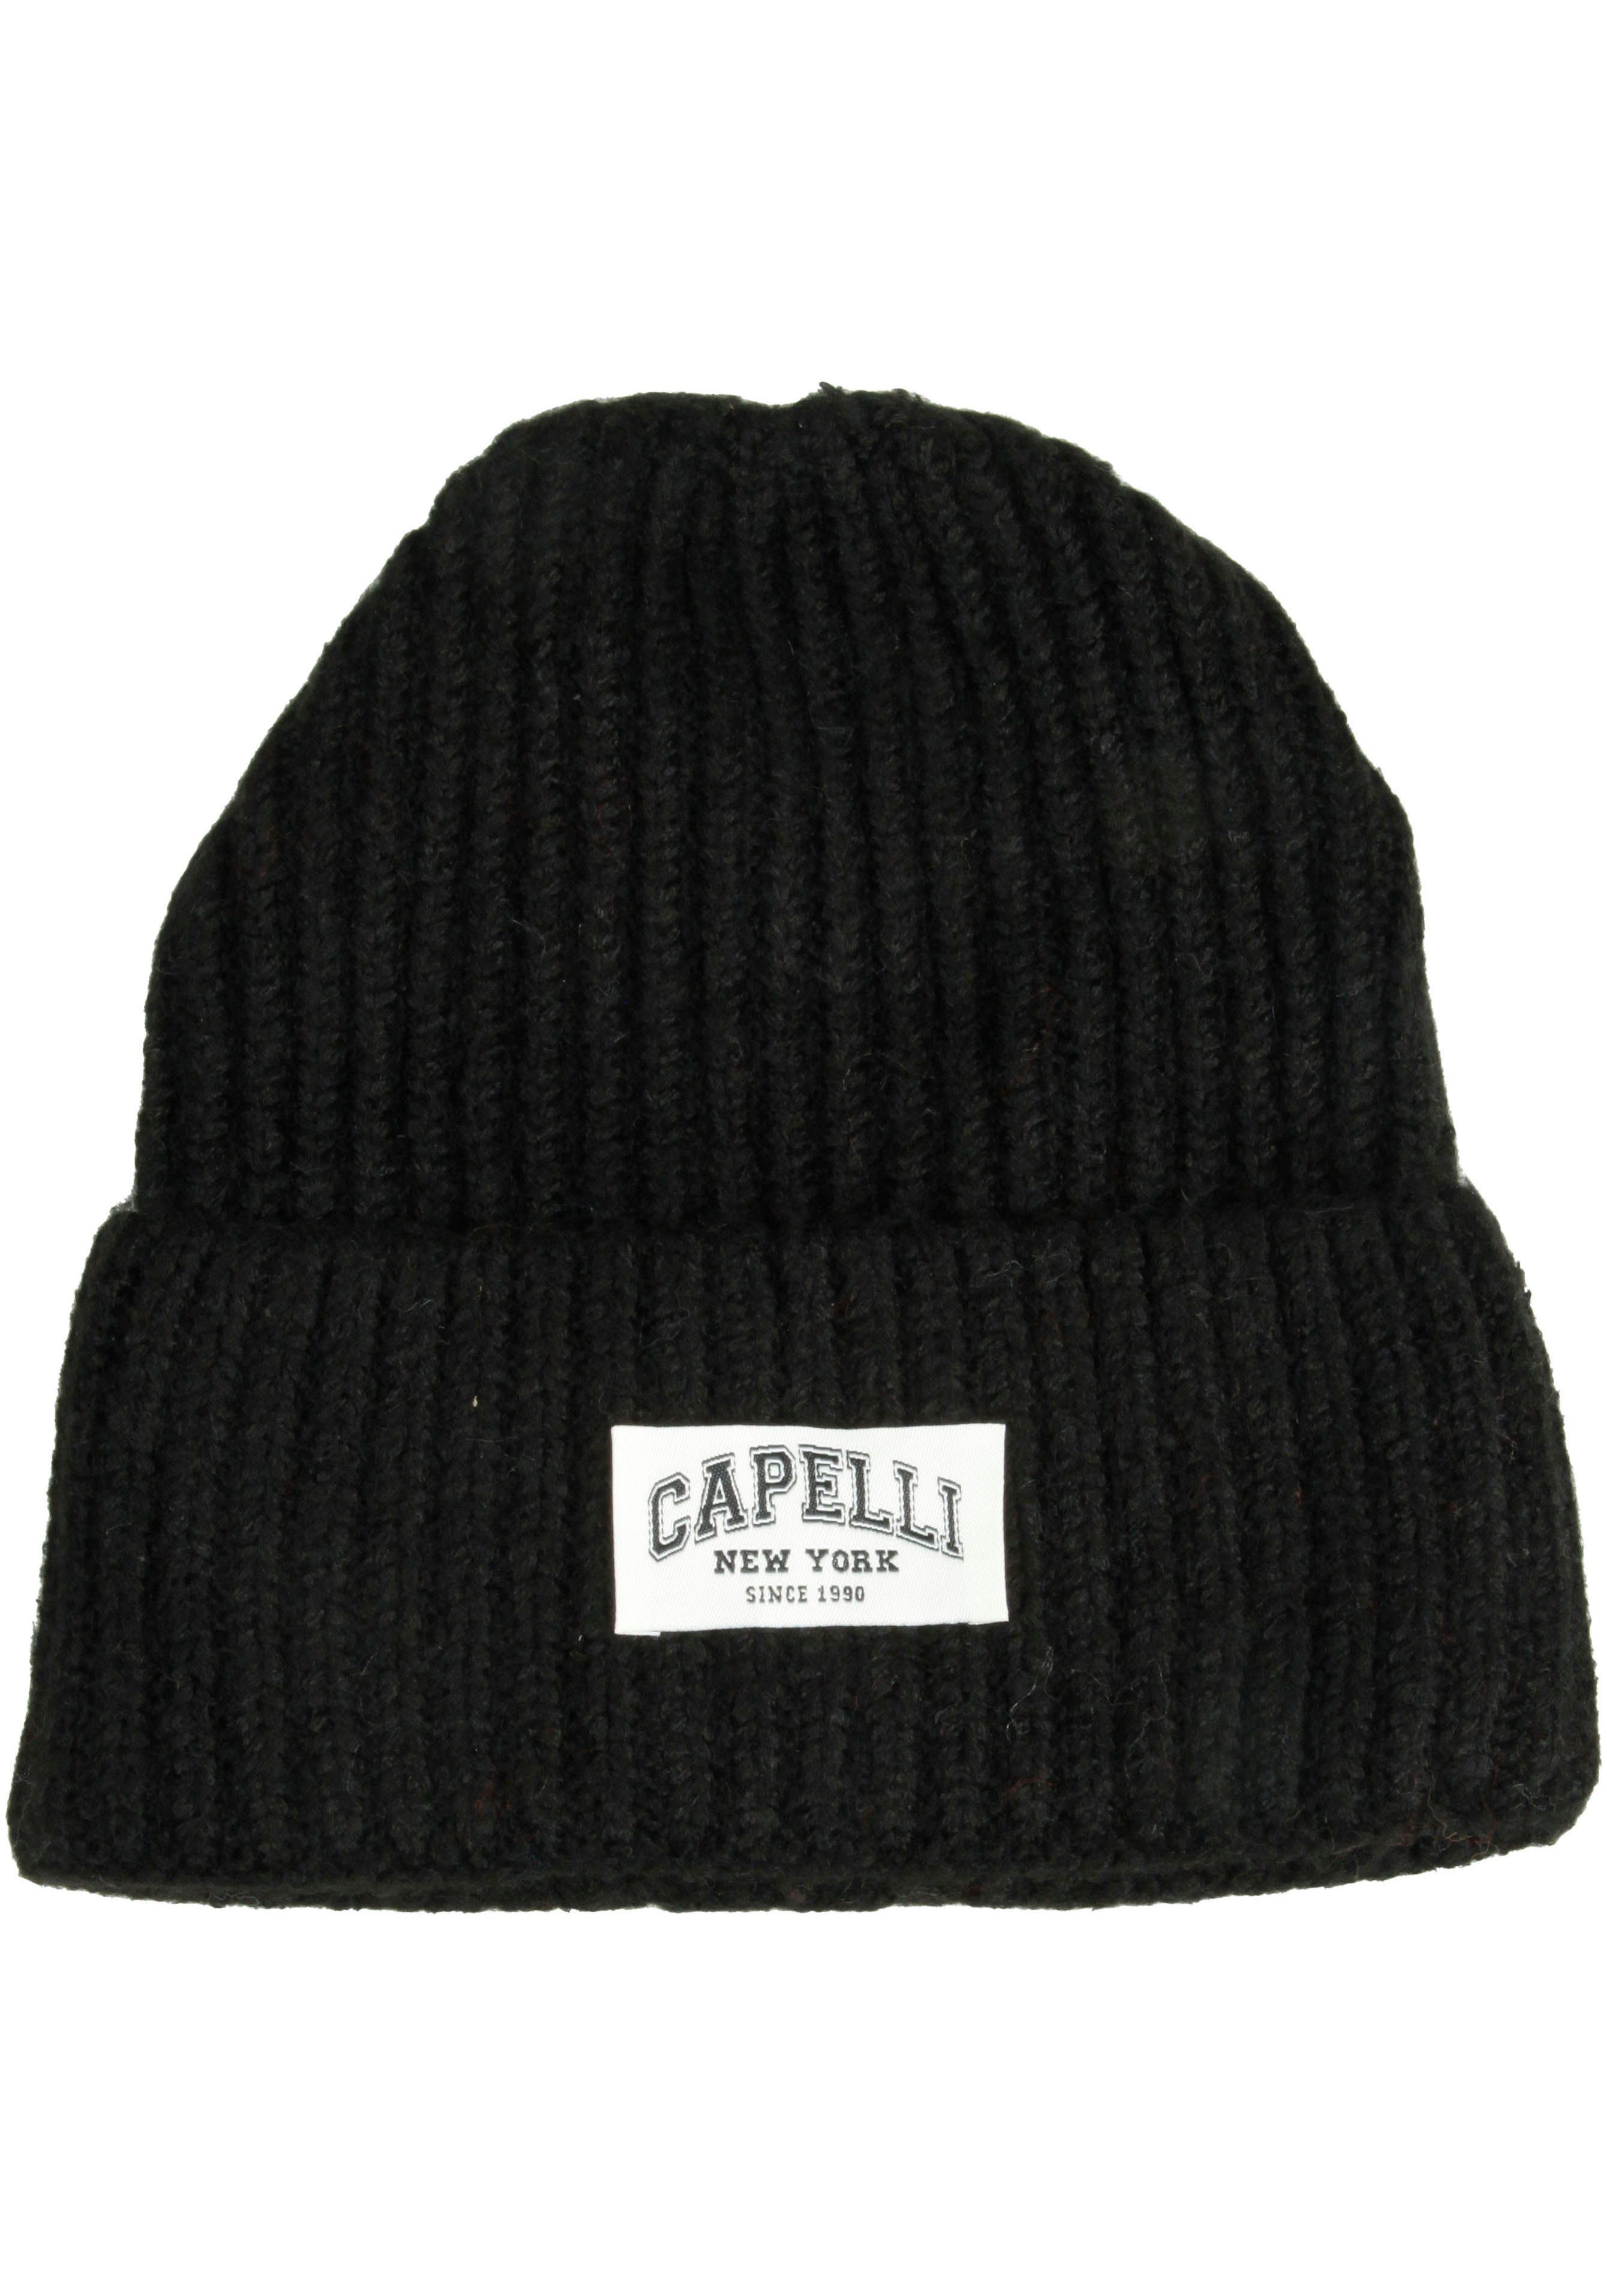 Capelli New York Strickmütze Umschalg, Logo Breiter schwarz vorn